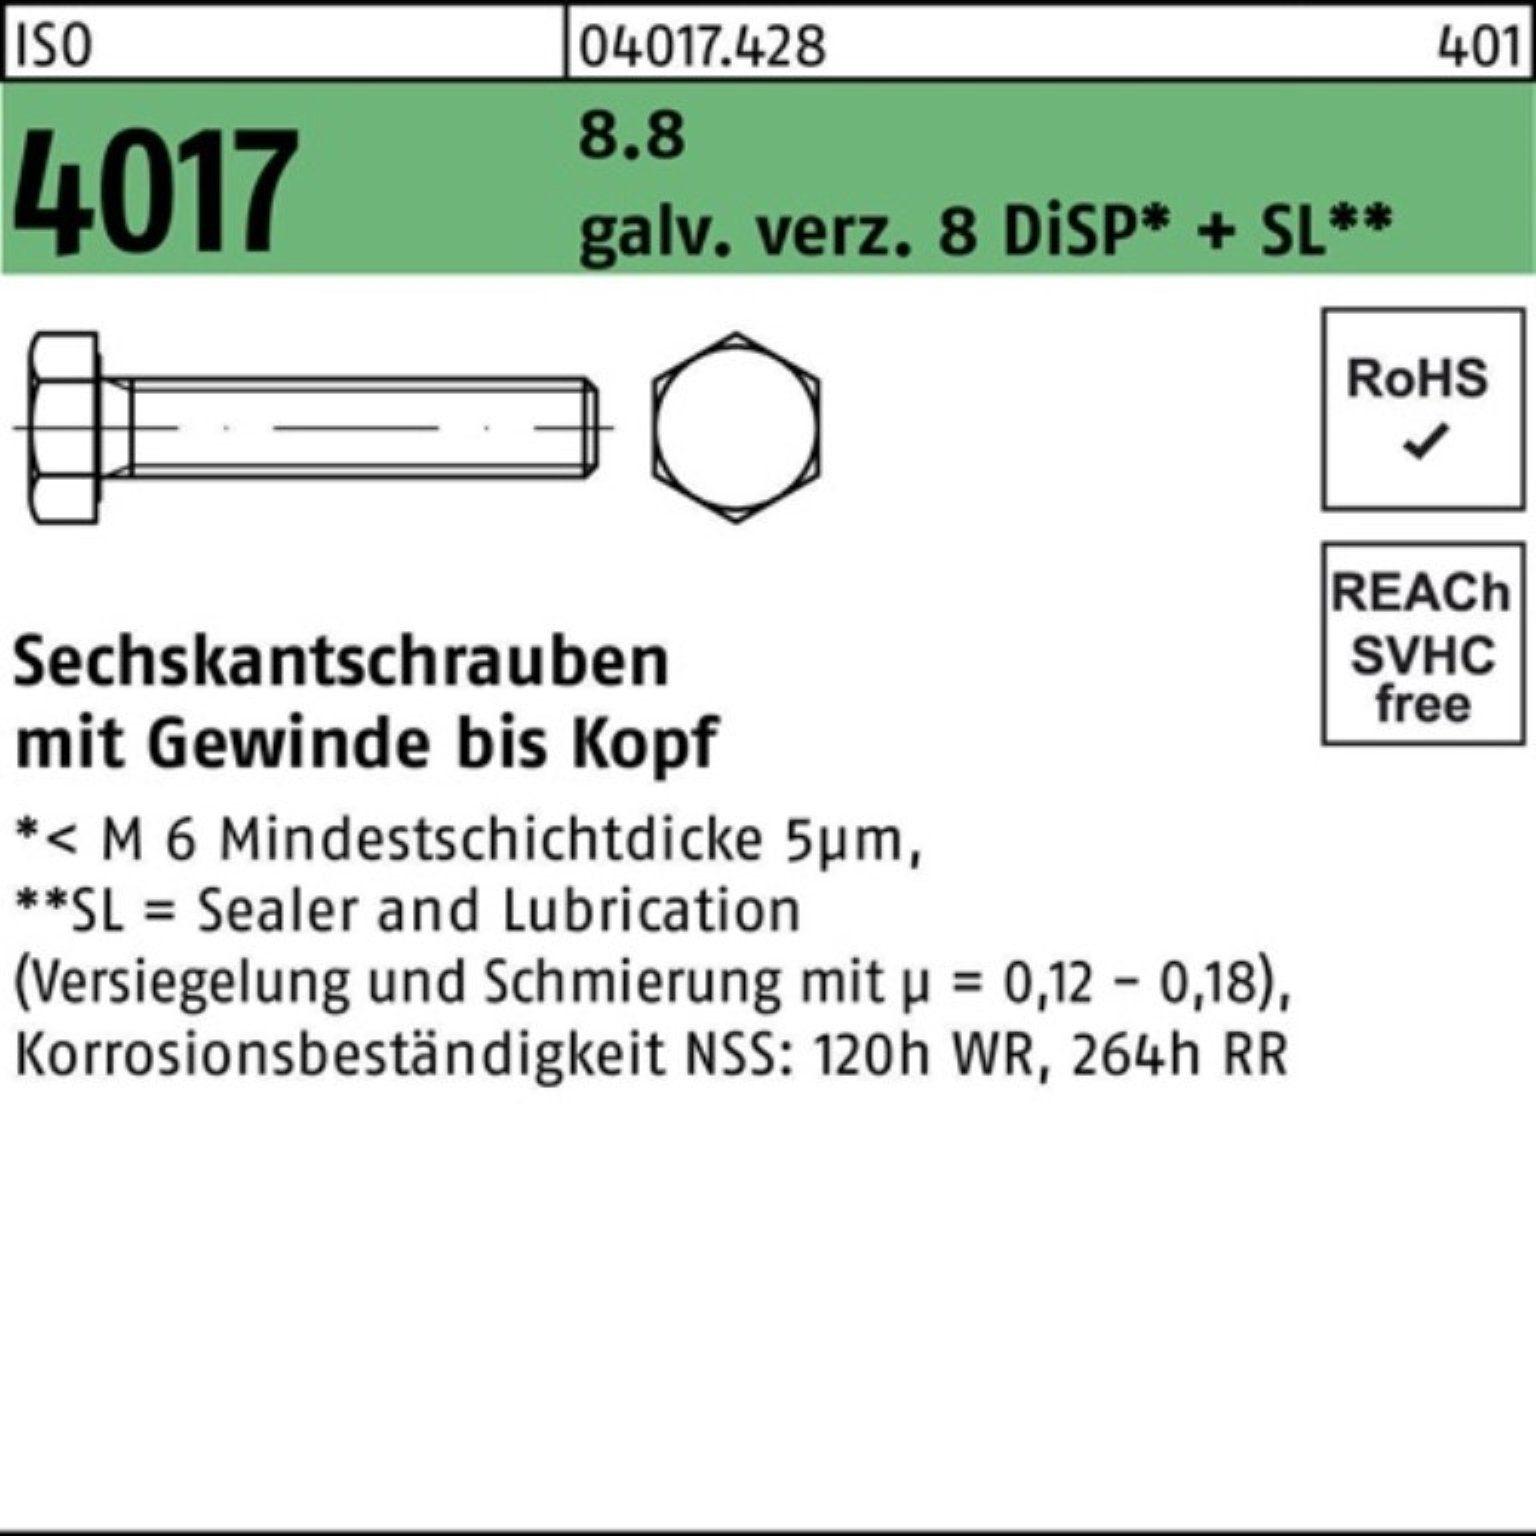 Bufab Sechskantschraube 500er Pack Sechskantschraube ISO M5x galv.verz. 4017 DiSP+S 8 8 8.8 VG